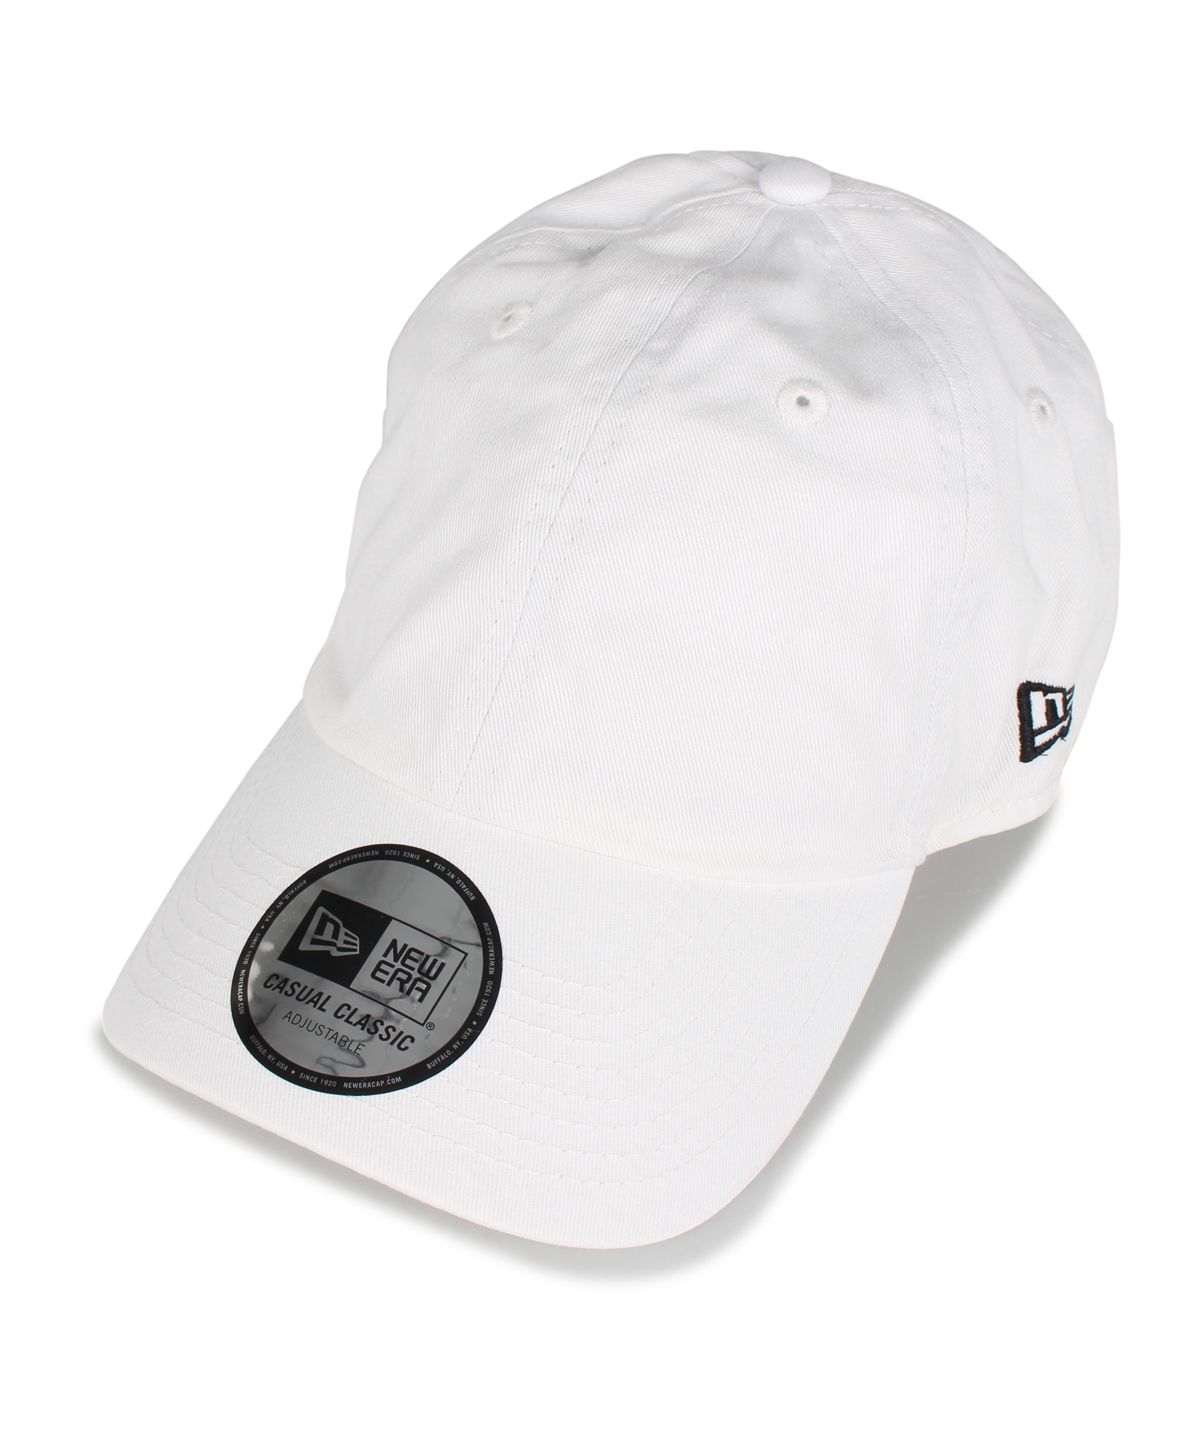 ニューエラ NEW ERA キャップ 帽子 メンズ レディース CASUAL CLASSIC 